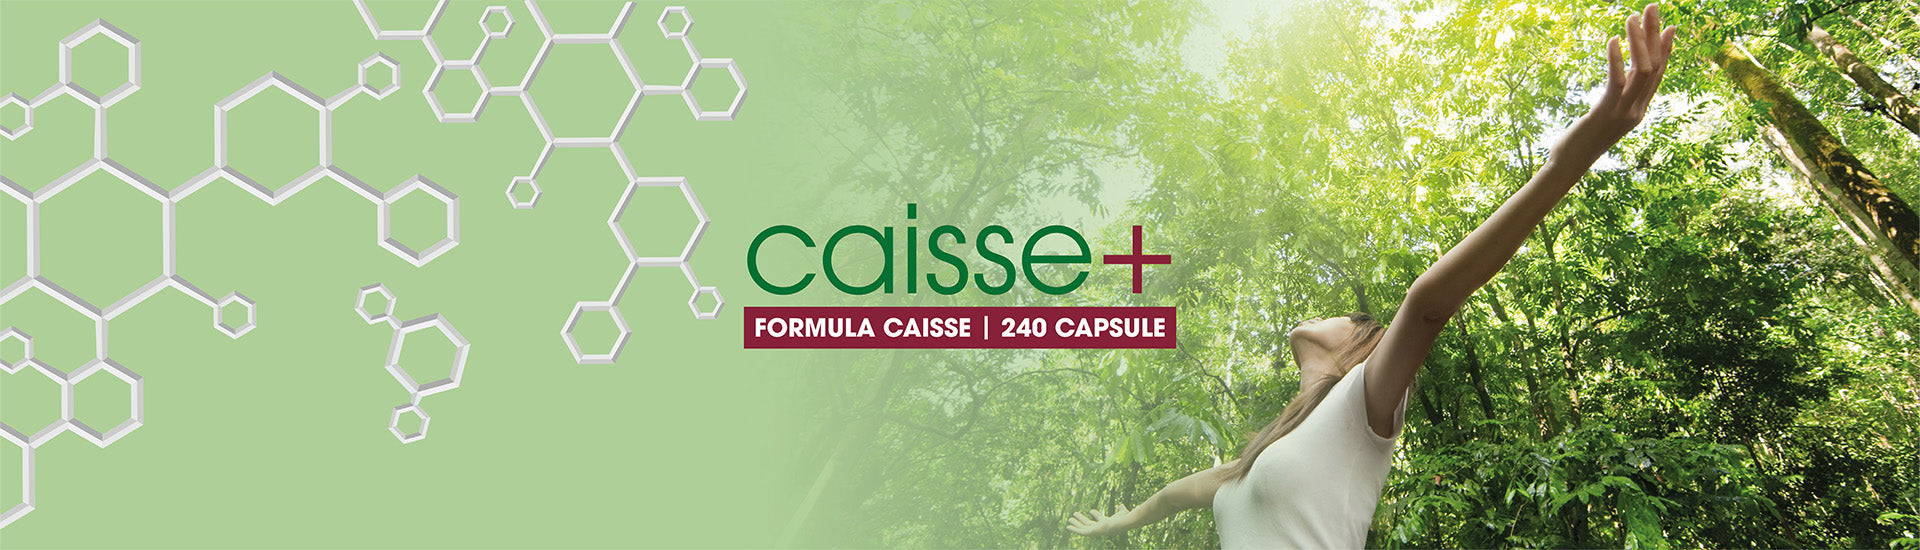 L'Esclusiva FORMULA CAISSE+ BIOMED - 240 CAPSULE_